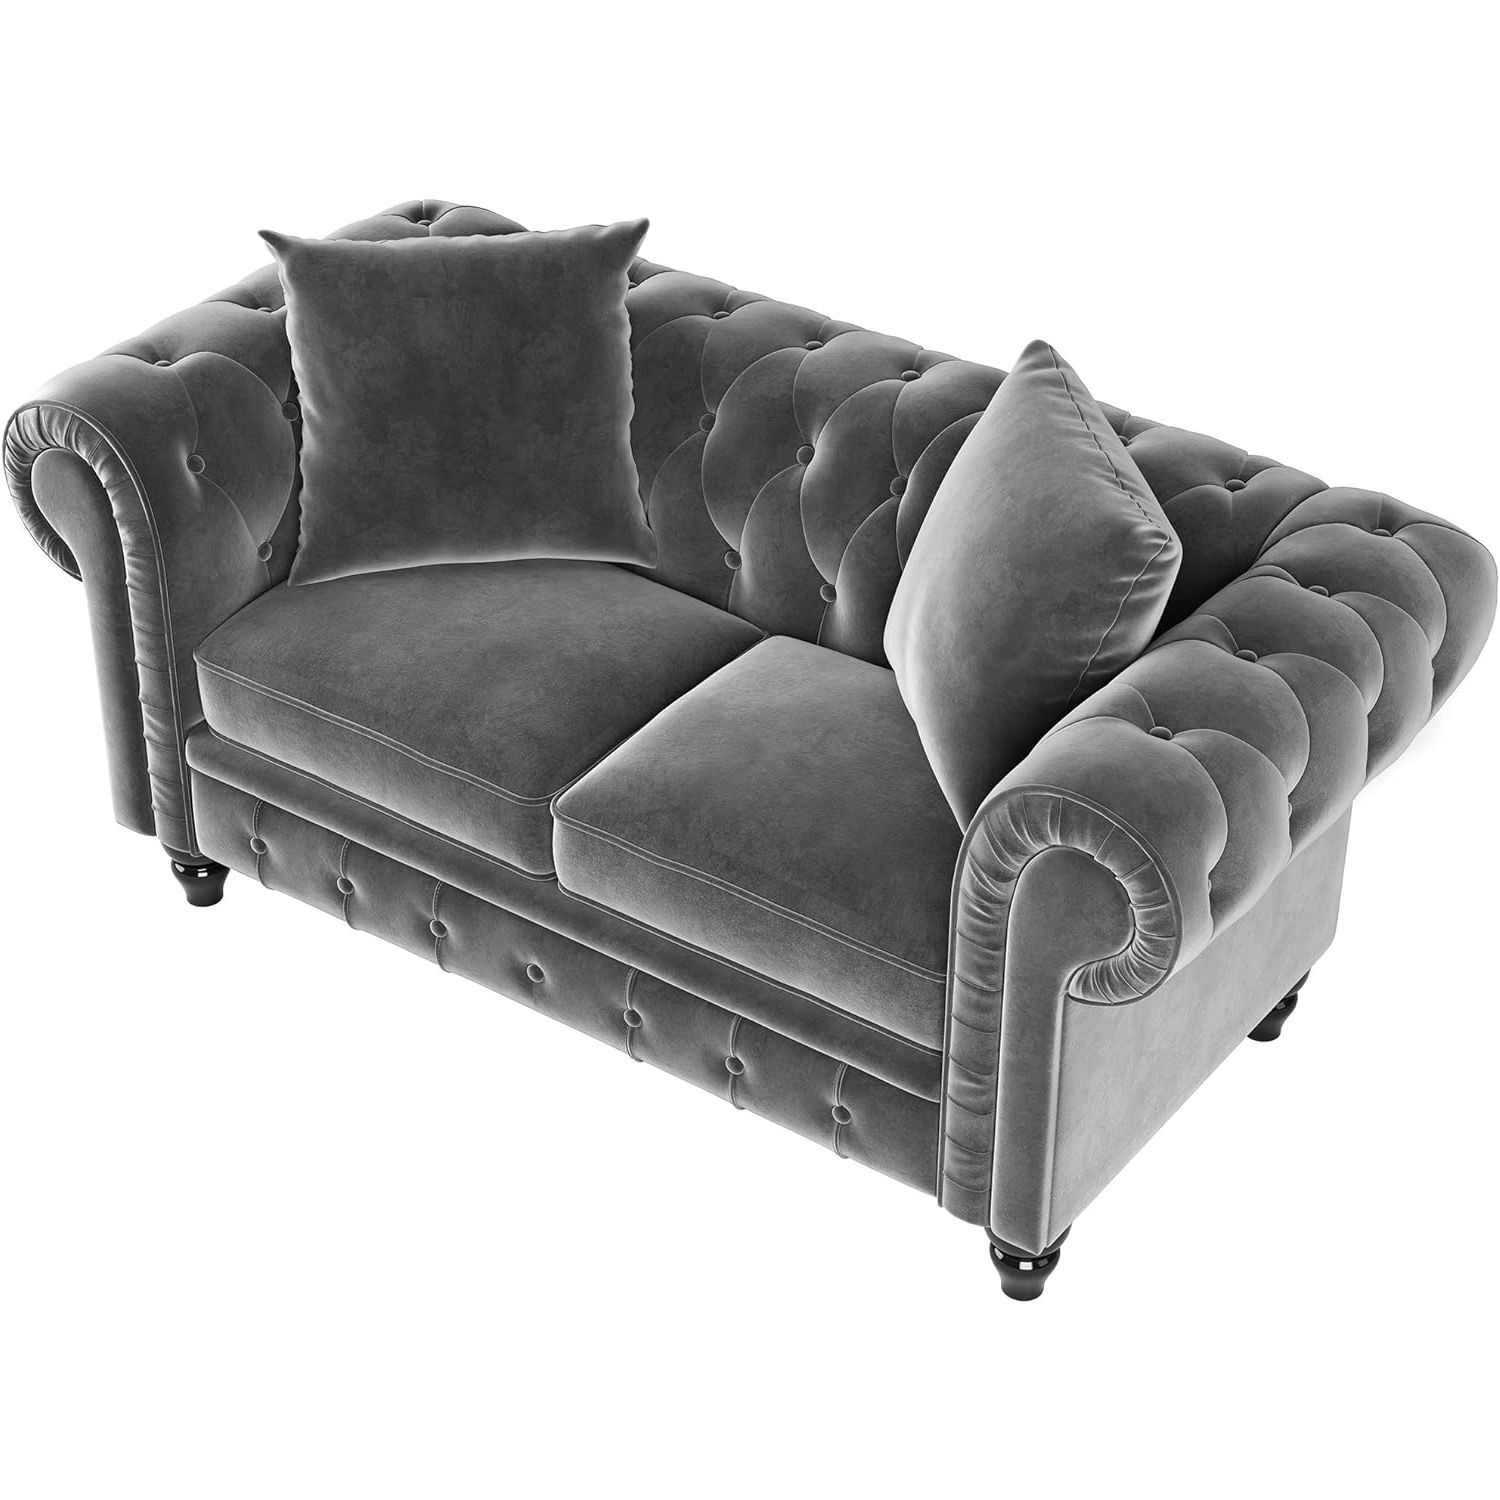 Amazon: Nosga 63" Deep Button Tufted Velvet Upholstered Loveseat Inside Trendy Tufted Upholstered Sofas (View 15 of 15)